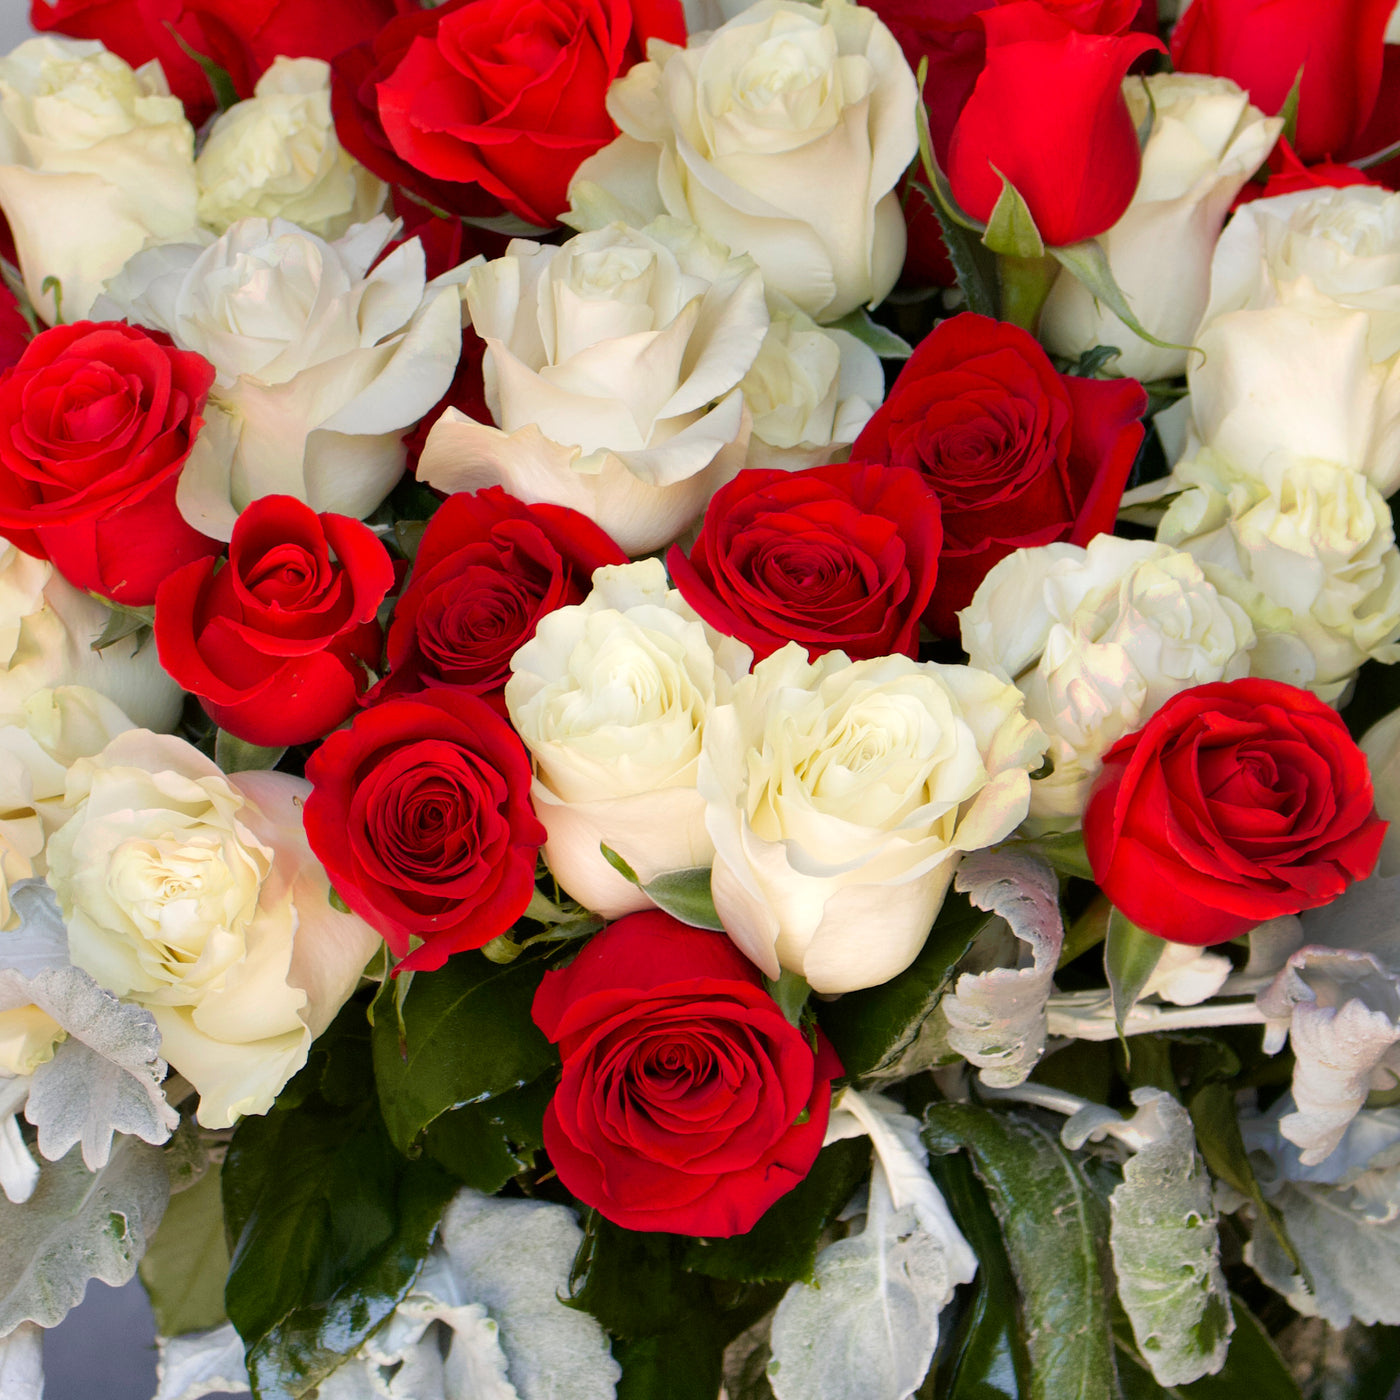 Red & White Checker Roses